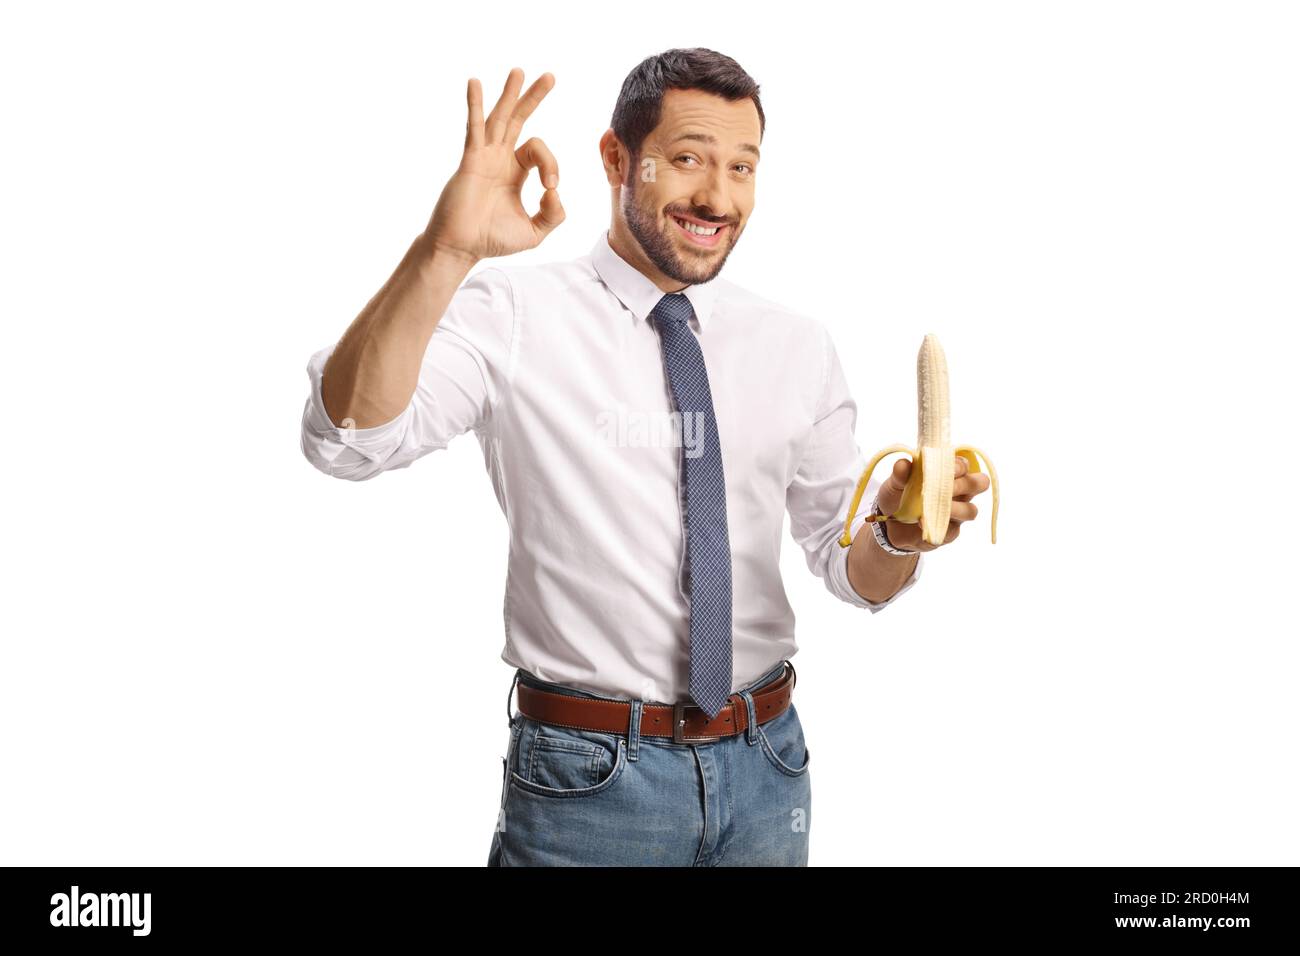 Glücklicher junger Mann, der eine Banane hält und ein gutes Zeichen auf weißem Hintergrund gezeichnet hat Stockfoto